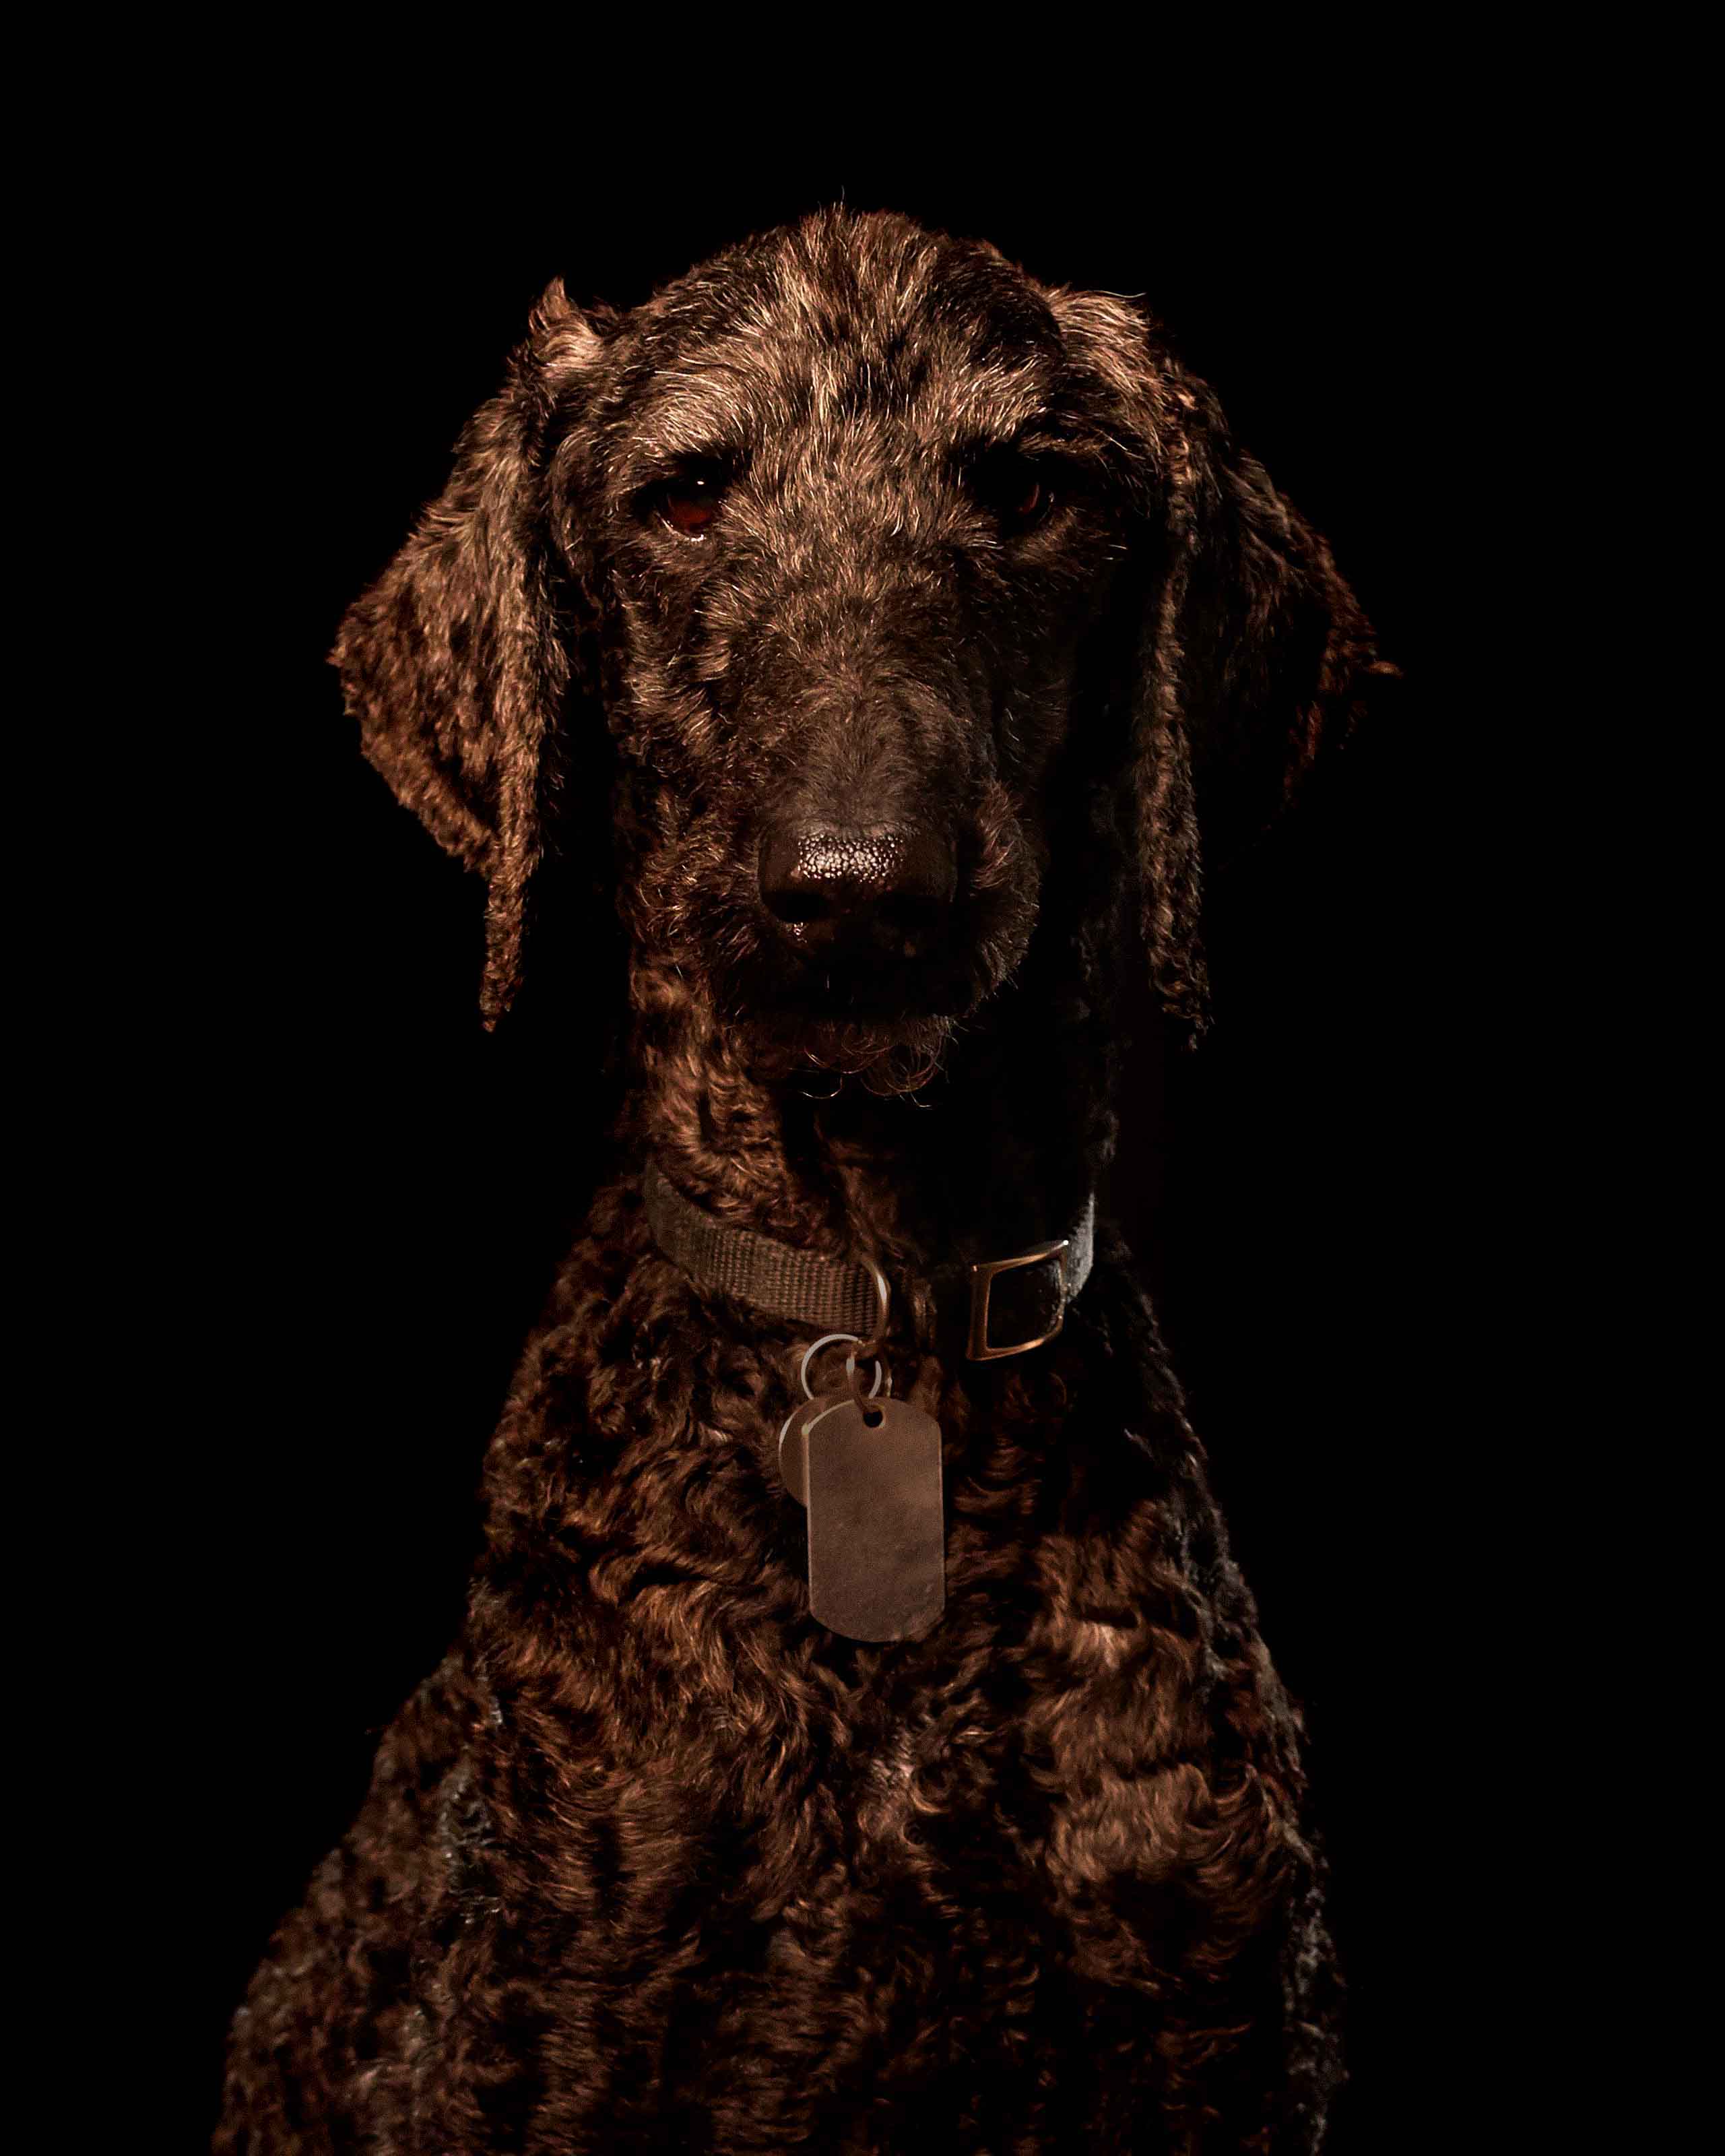 Portrait of black poodle on black background